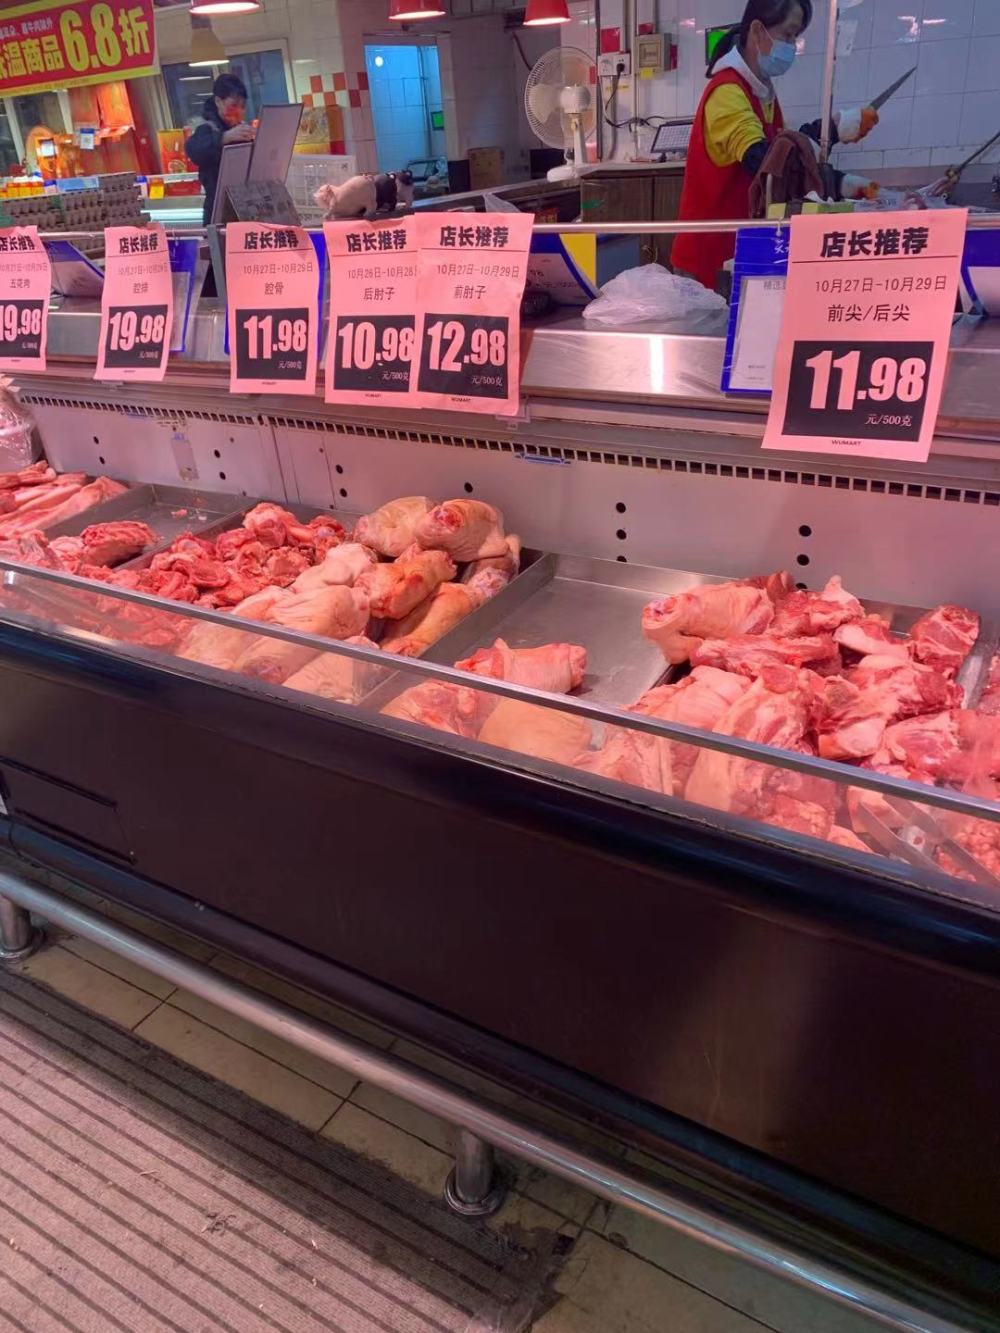 北京市朝阳区一家商超的猪肉柜台。 新华社记者 邹多为 摄